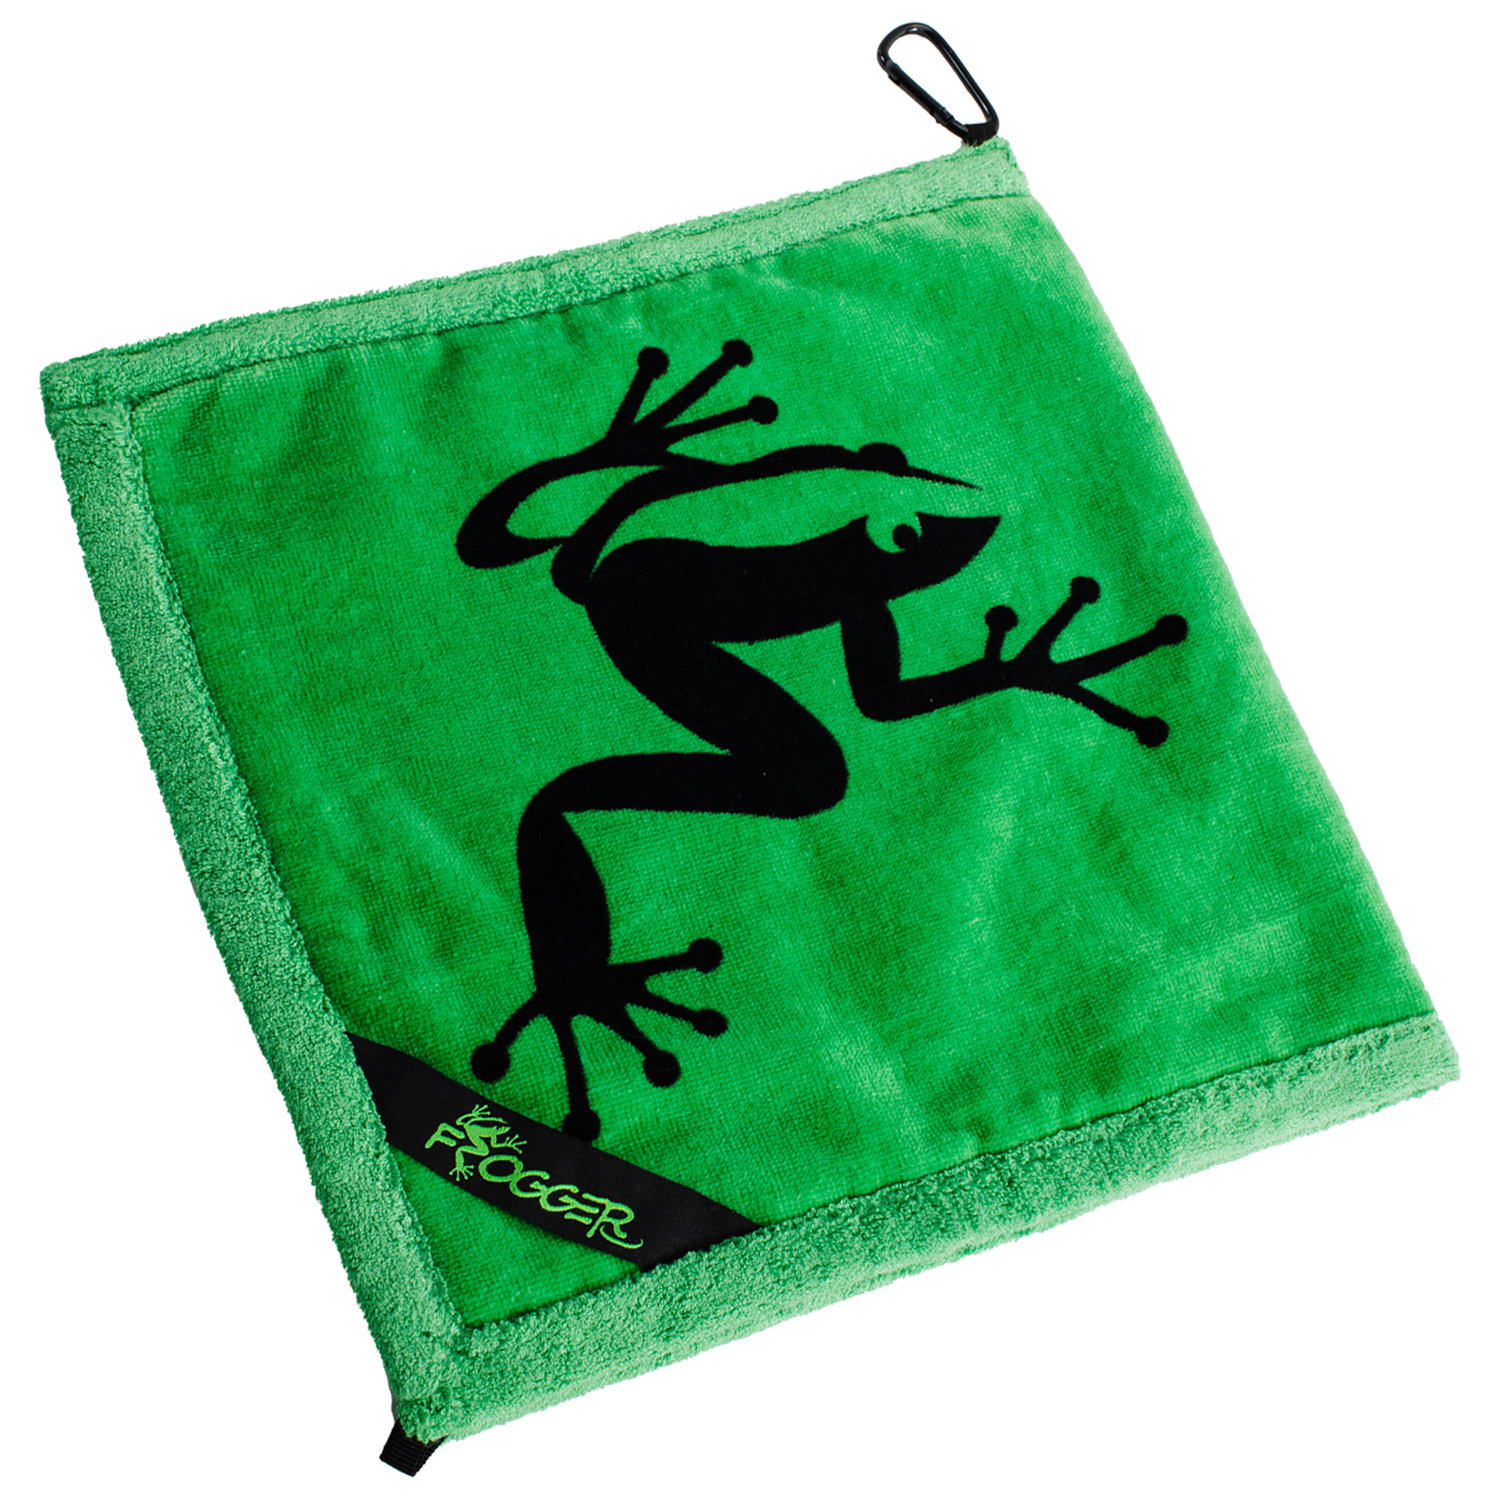 Frog Towel Golf - KibrisPDR